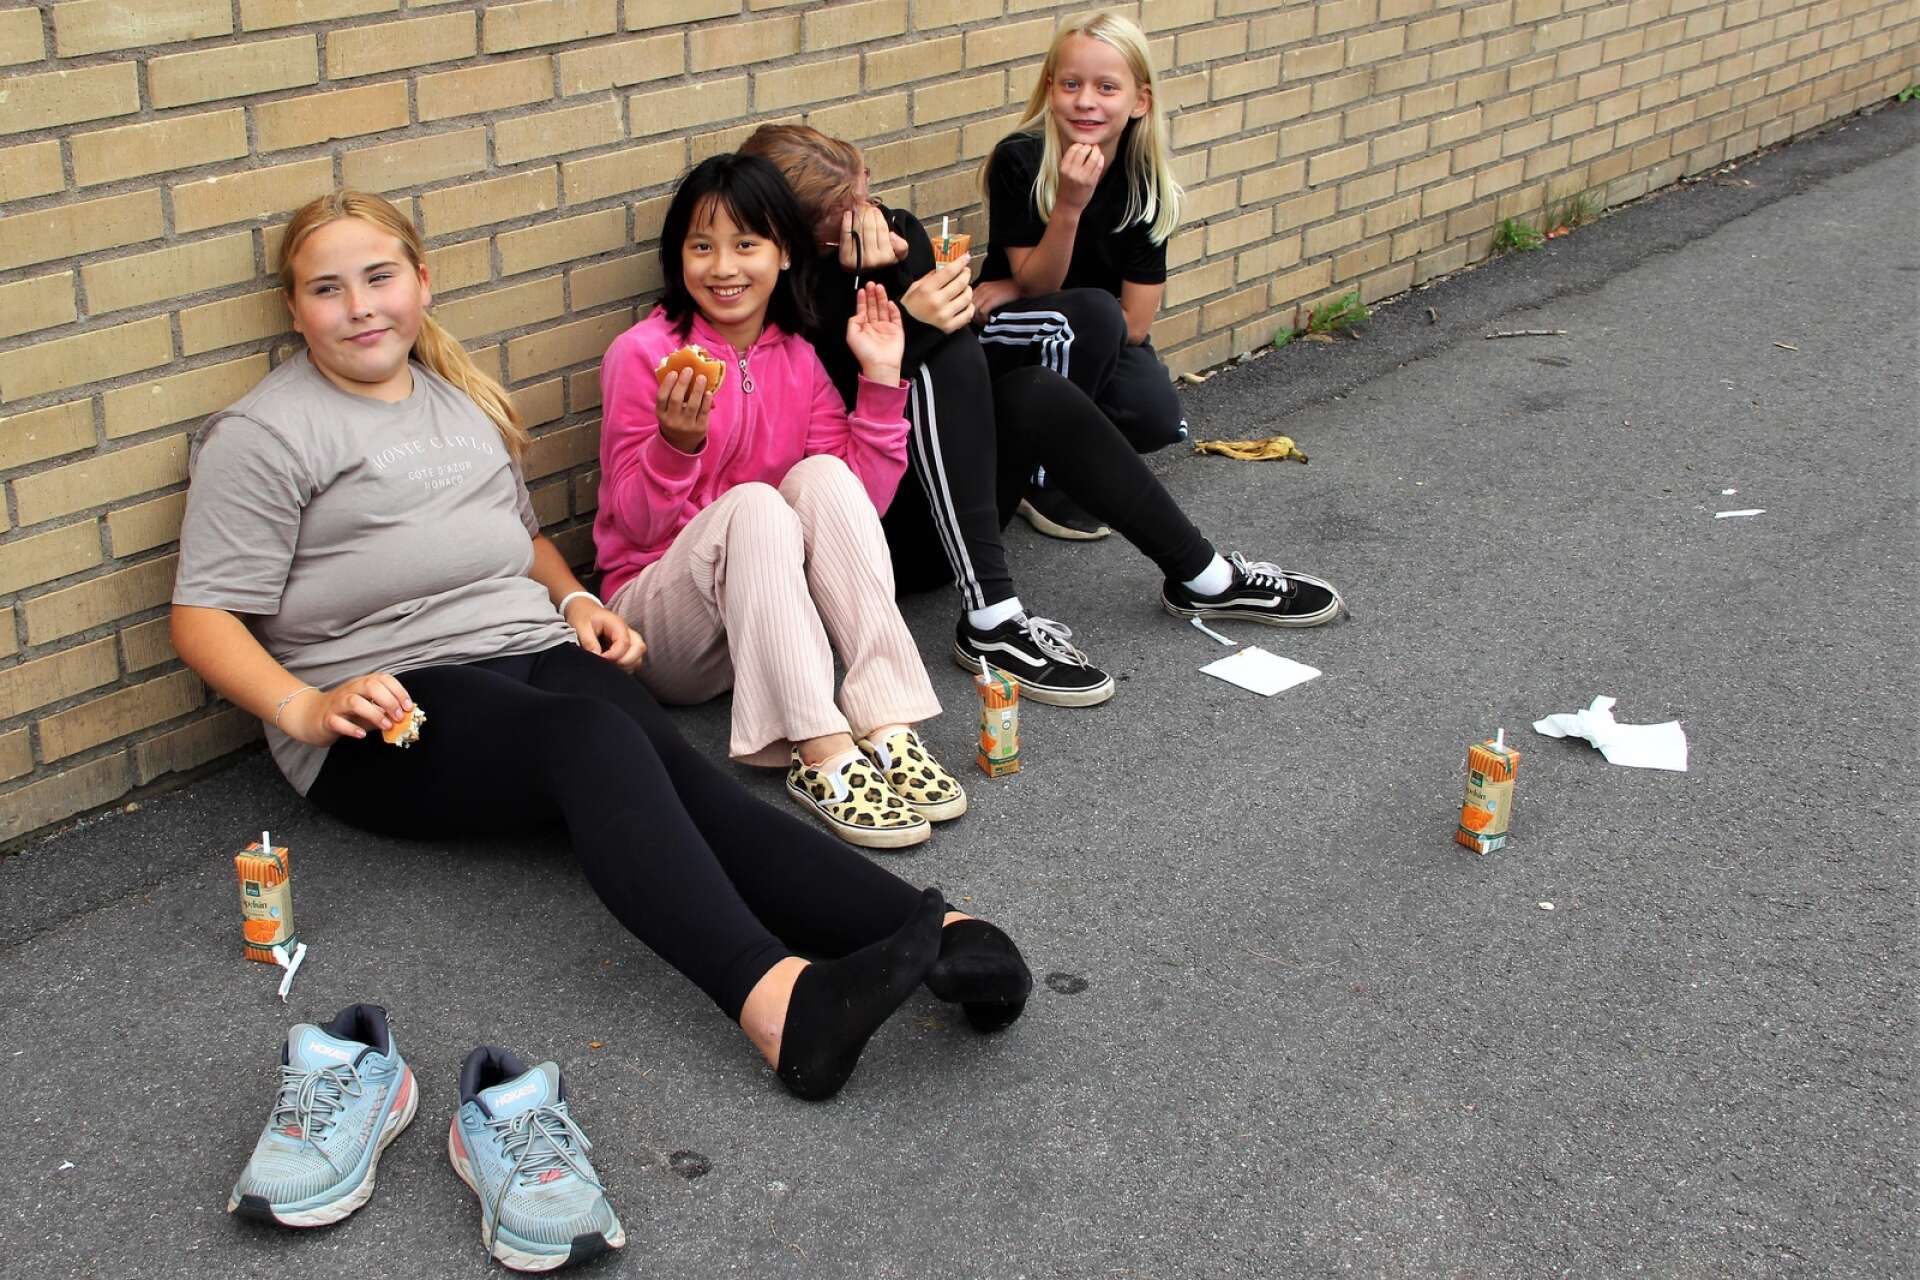 Käk ute på skolgården, från vänster; Vera Karlsson, Majken Wigg, Hanna Edgren och Klara Rosengren.